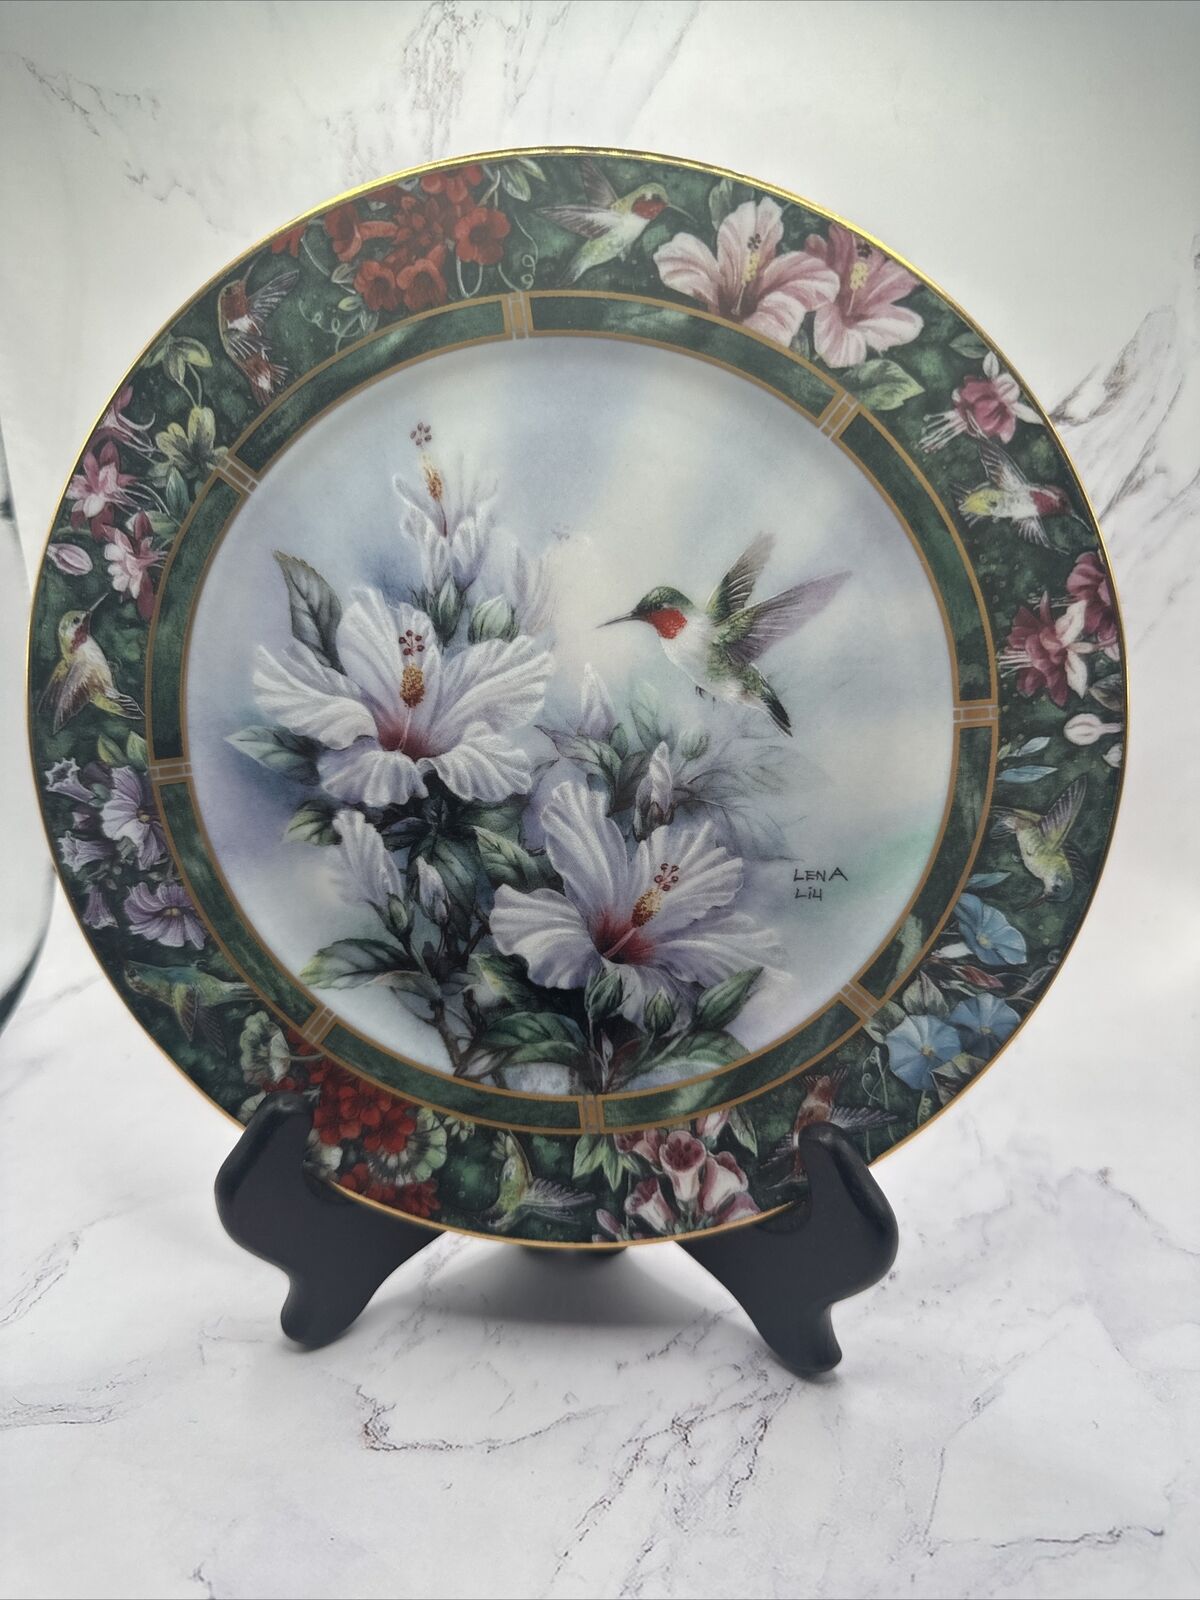 Vintage Lena Liu's Hummingbird Treasury Plate “The Ruby-Throated Hummingbird”